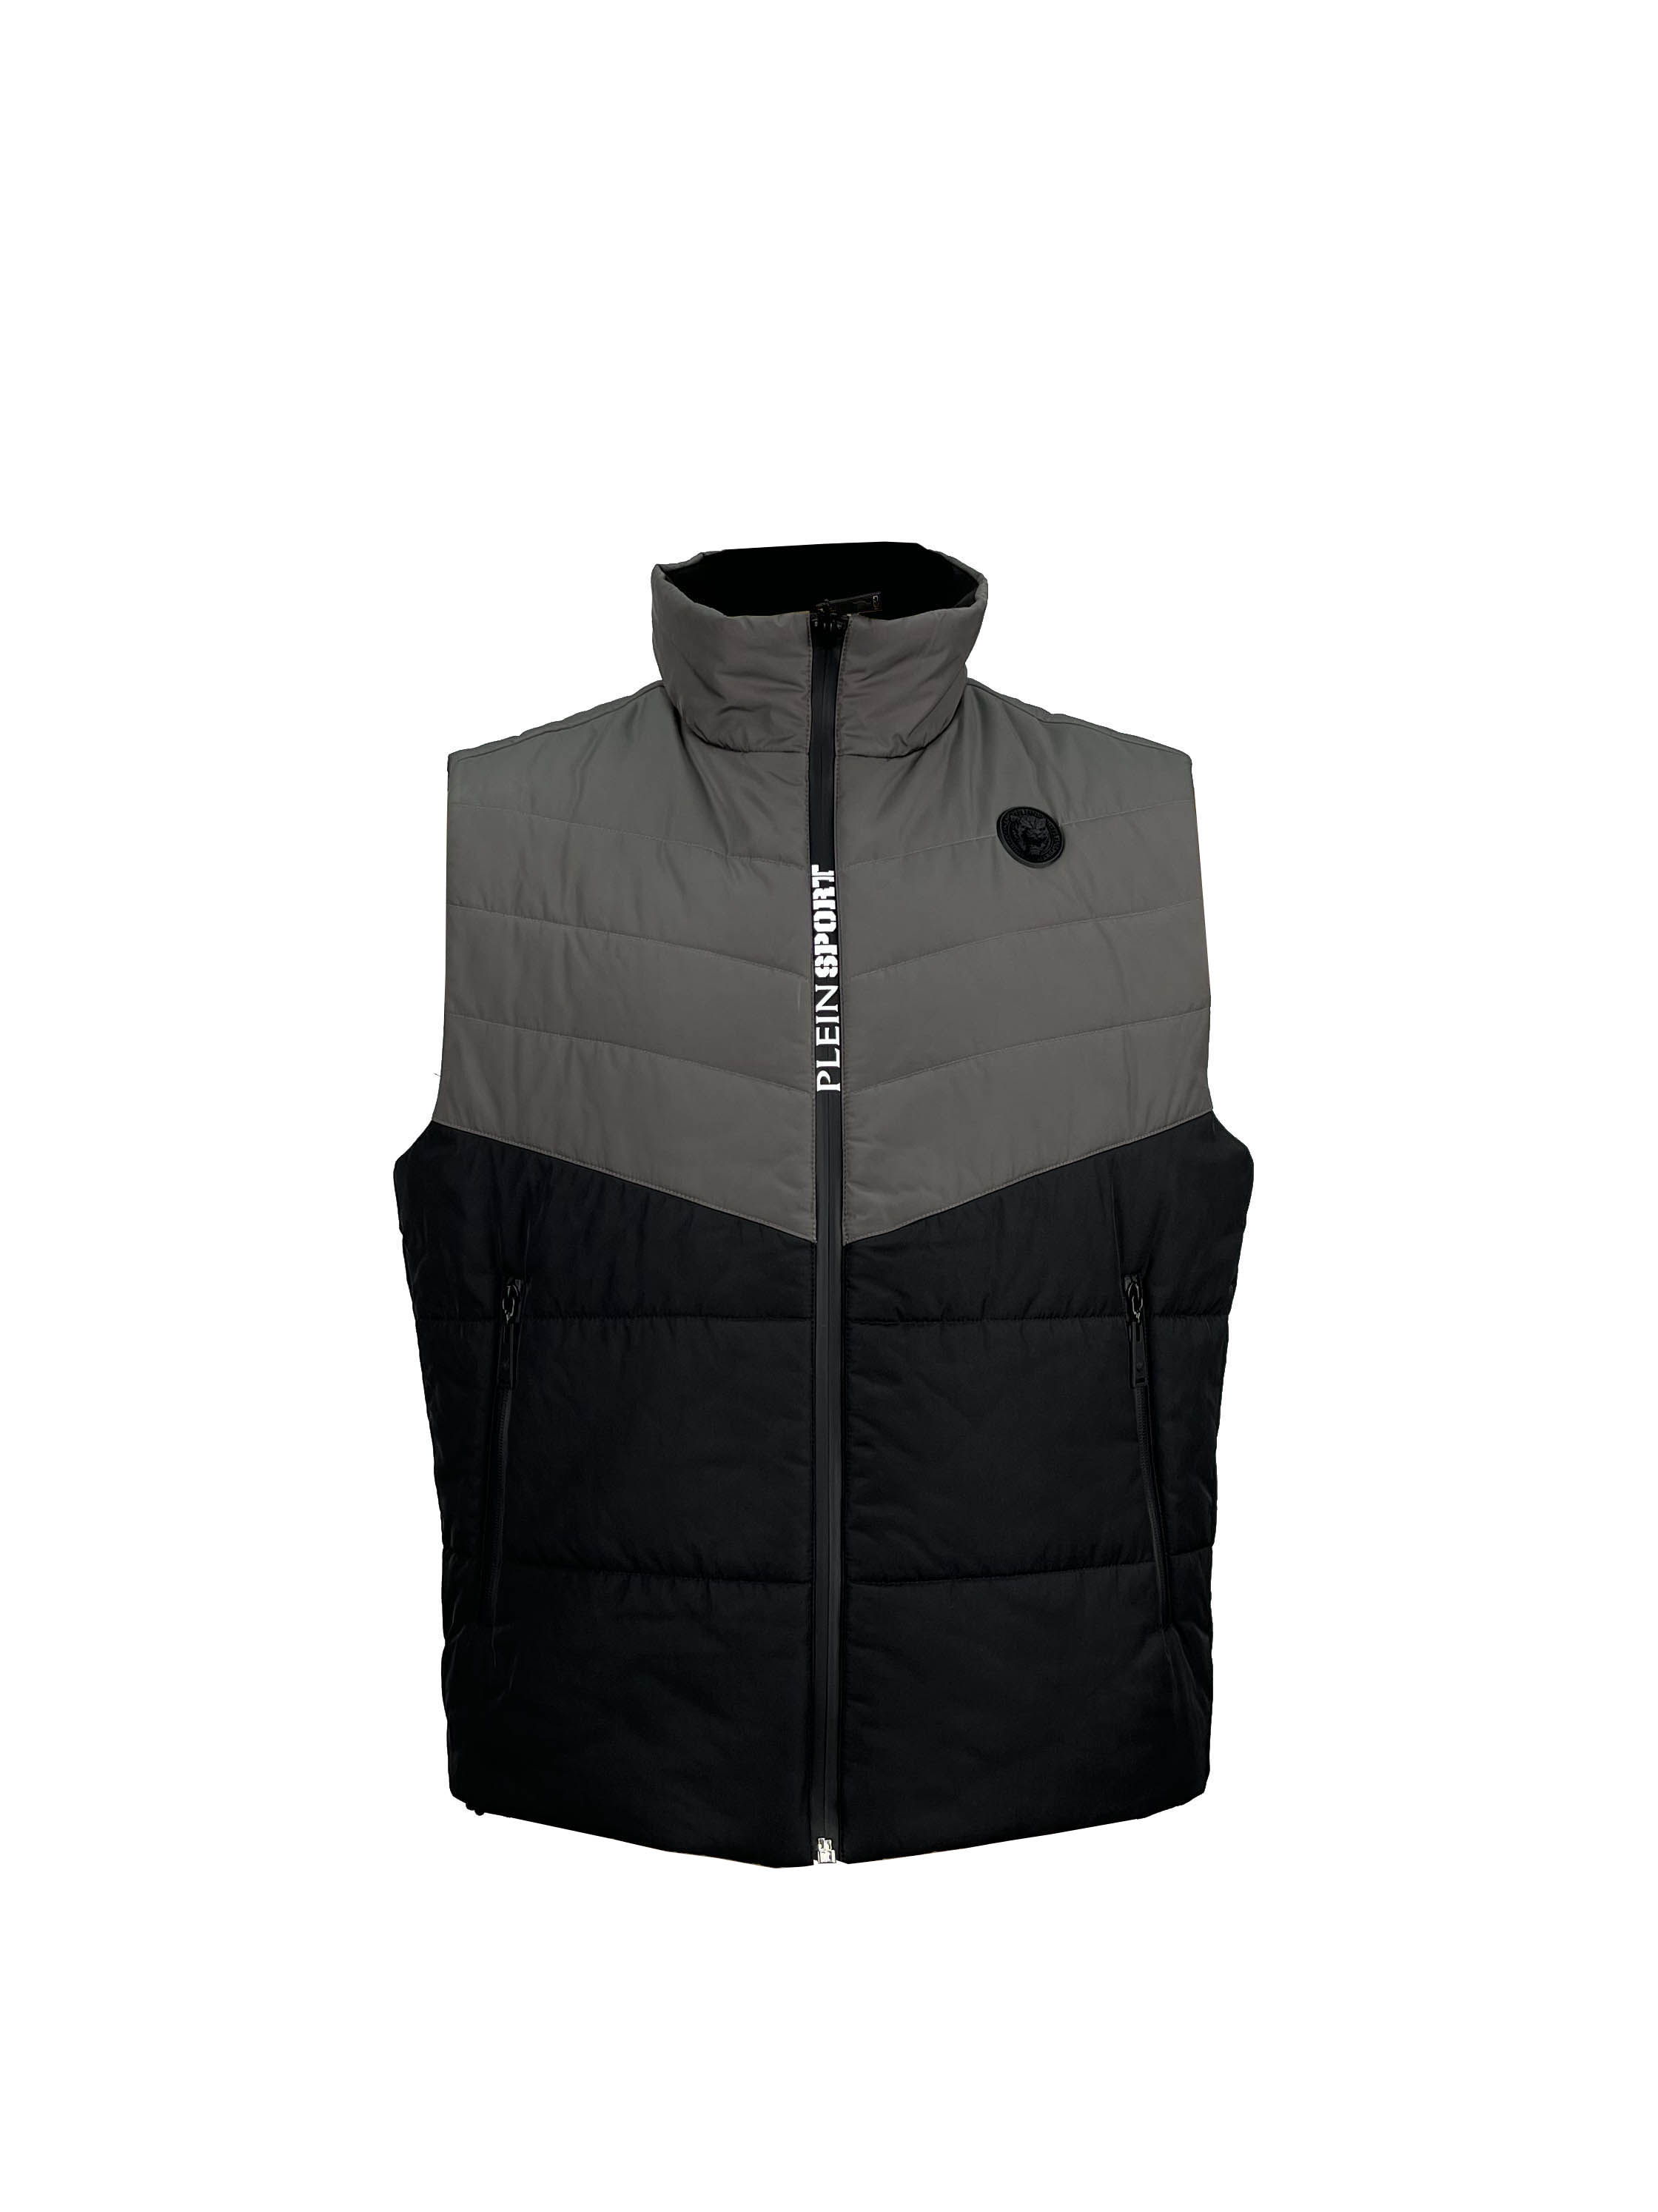 9.padded jacket (1)